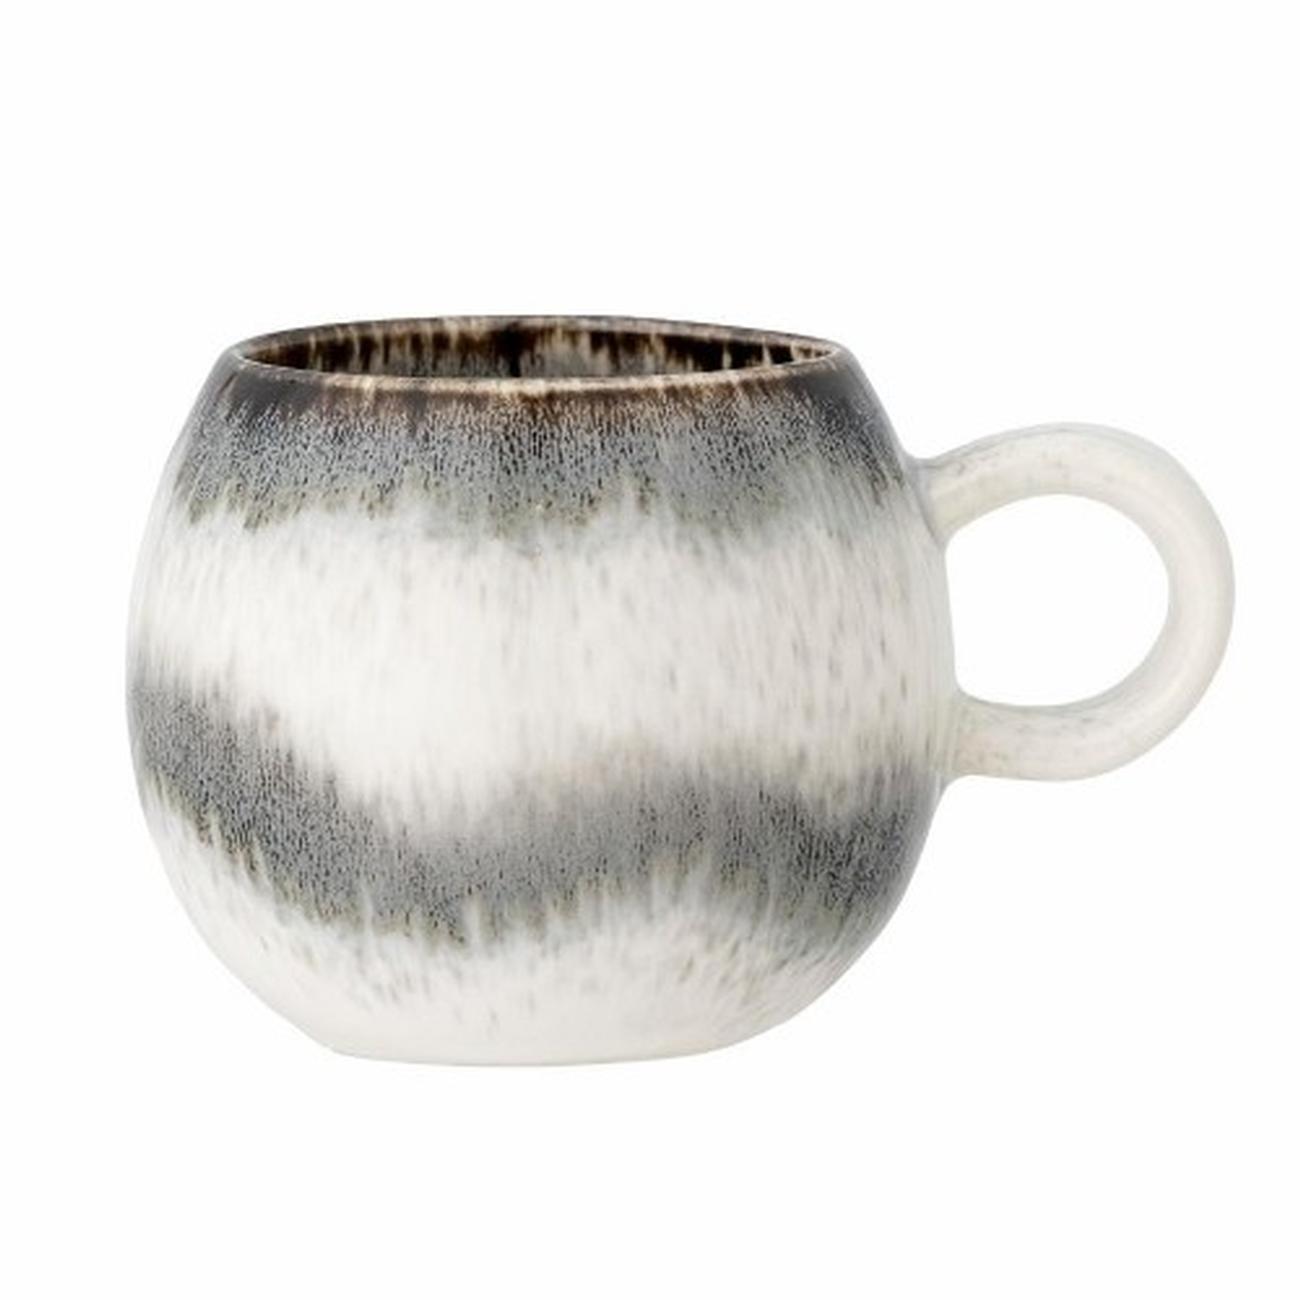 paula-cup-grey-stoneware - Paula Cup Grey Stoneware